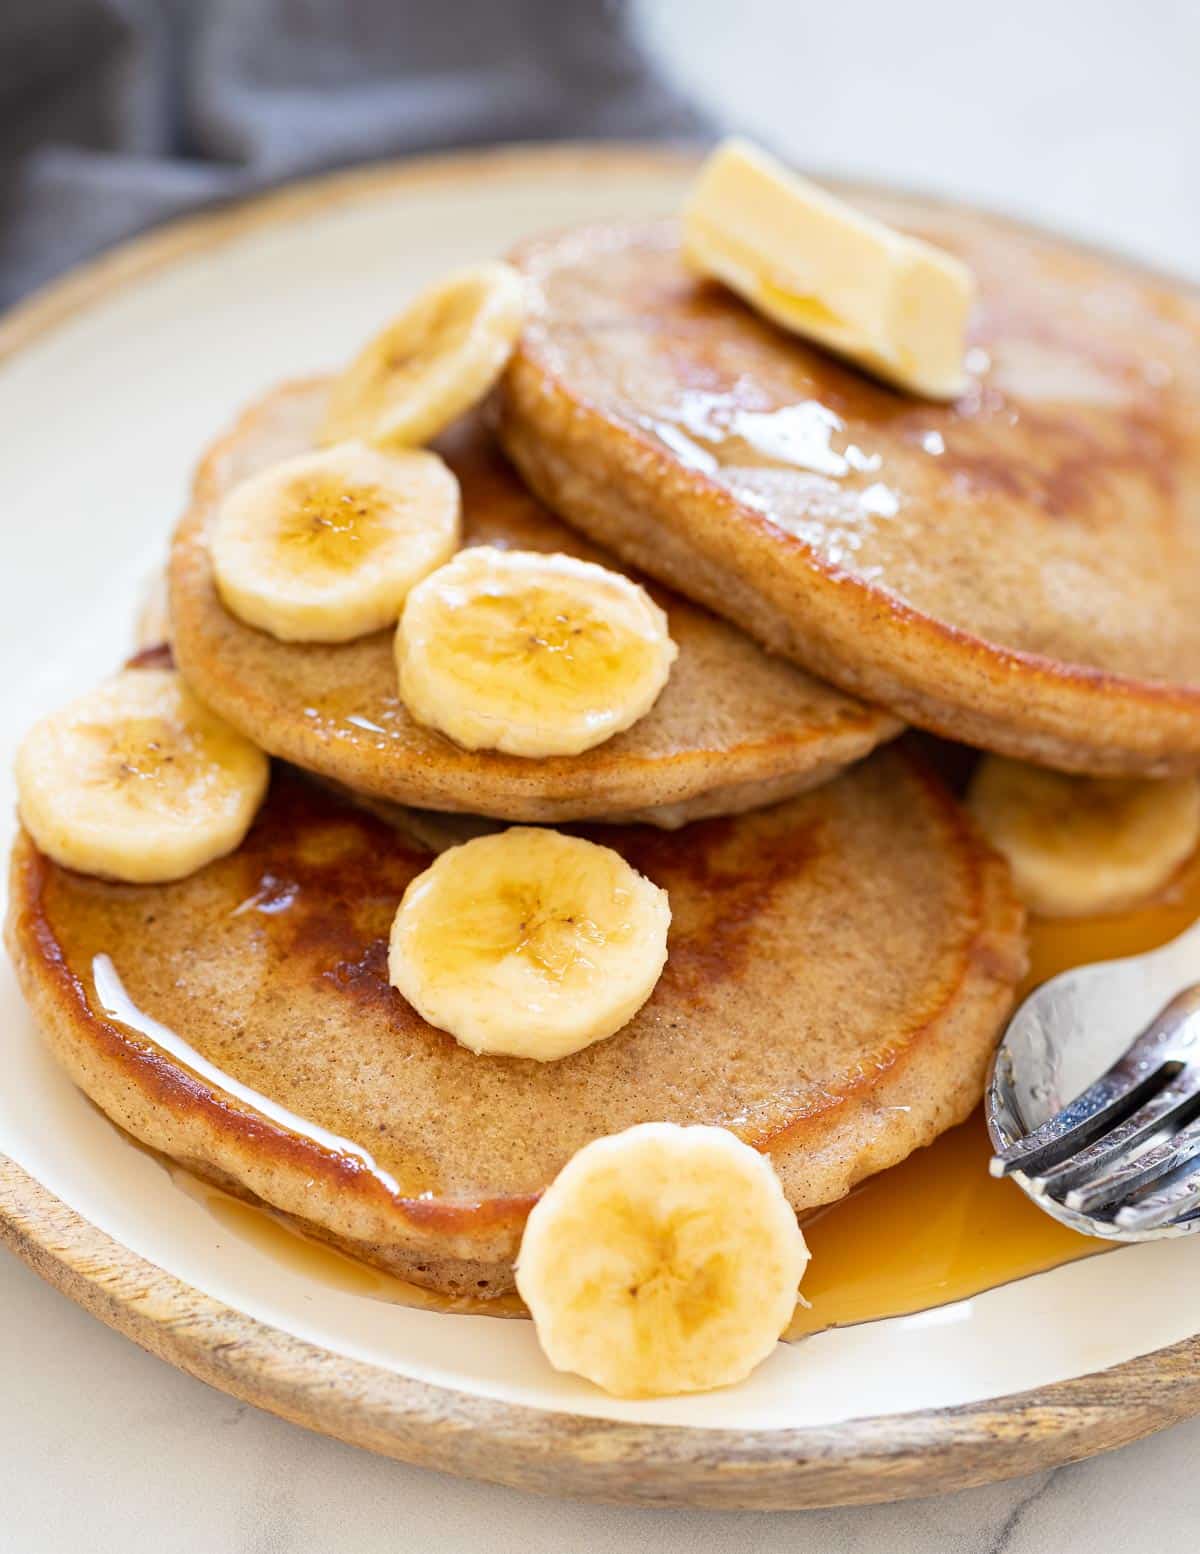 banana pancakes on a plate with slice banana and syrup